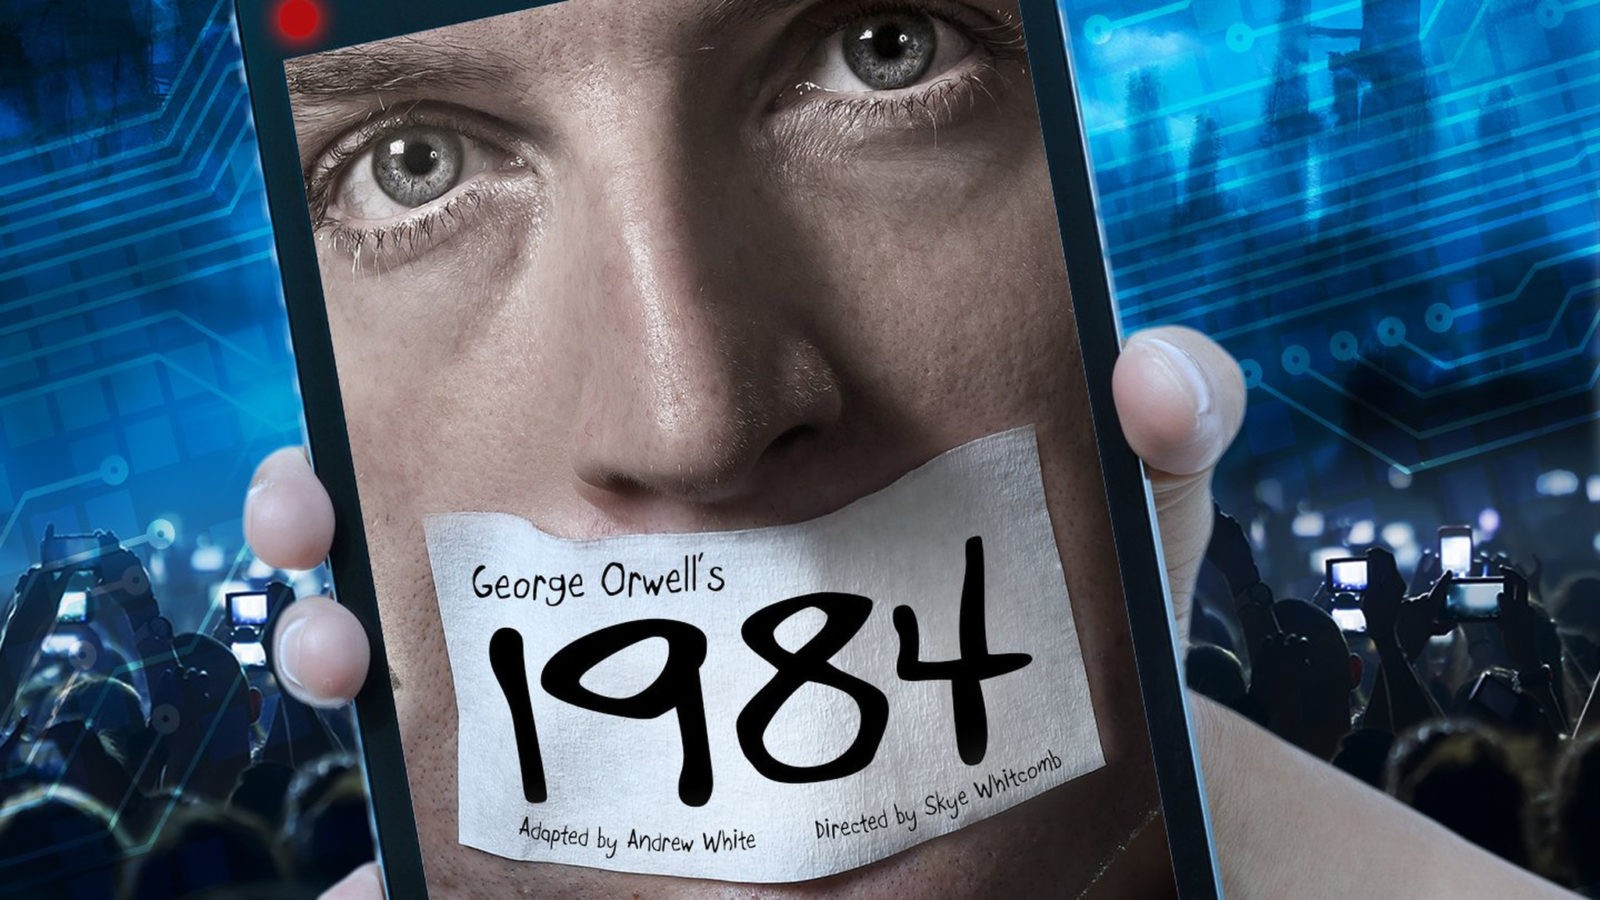 Bienvenido a 1984: El ‘Gran Hermano’ de Orwell ya está aquí (Video)